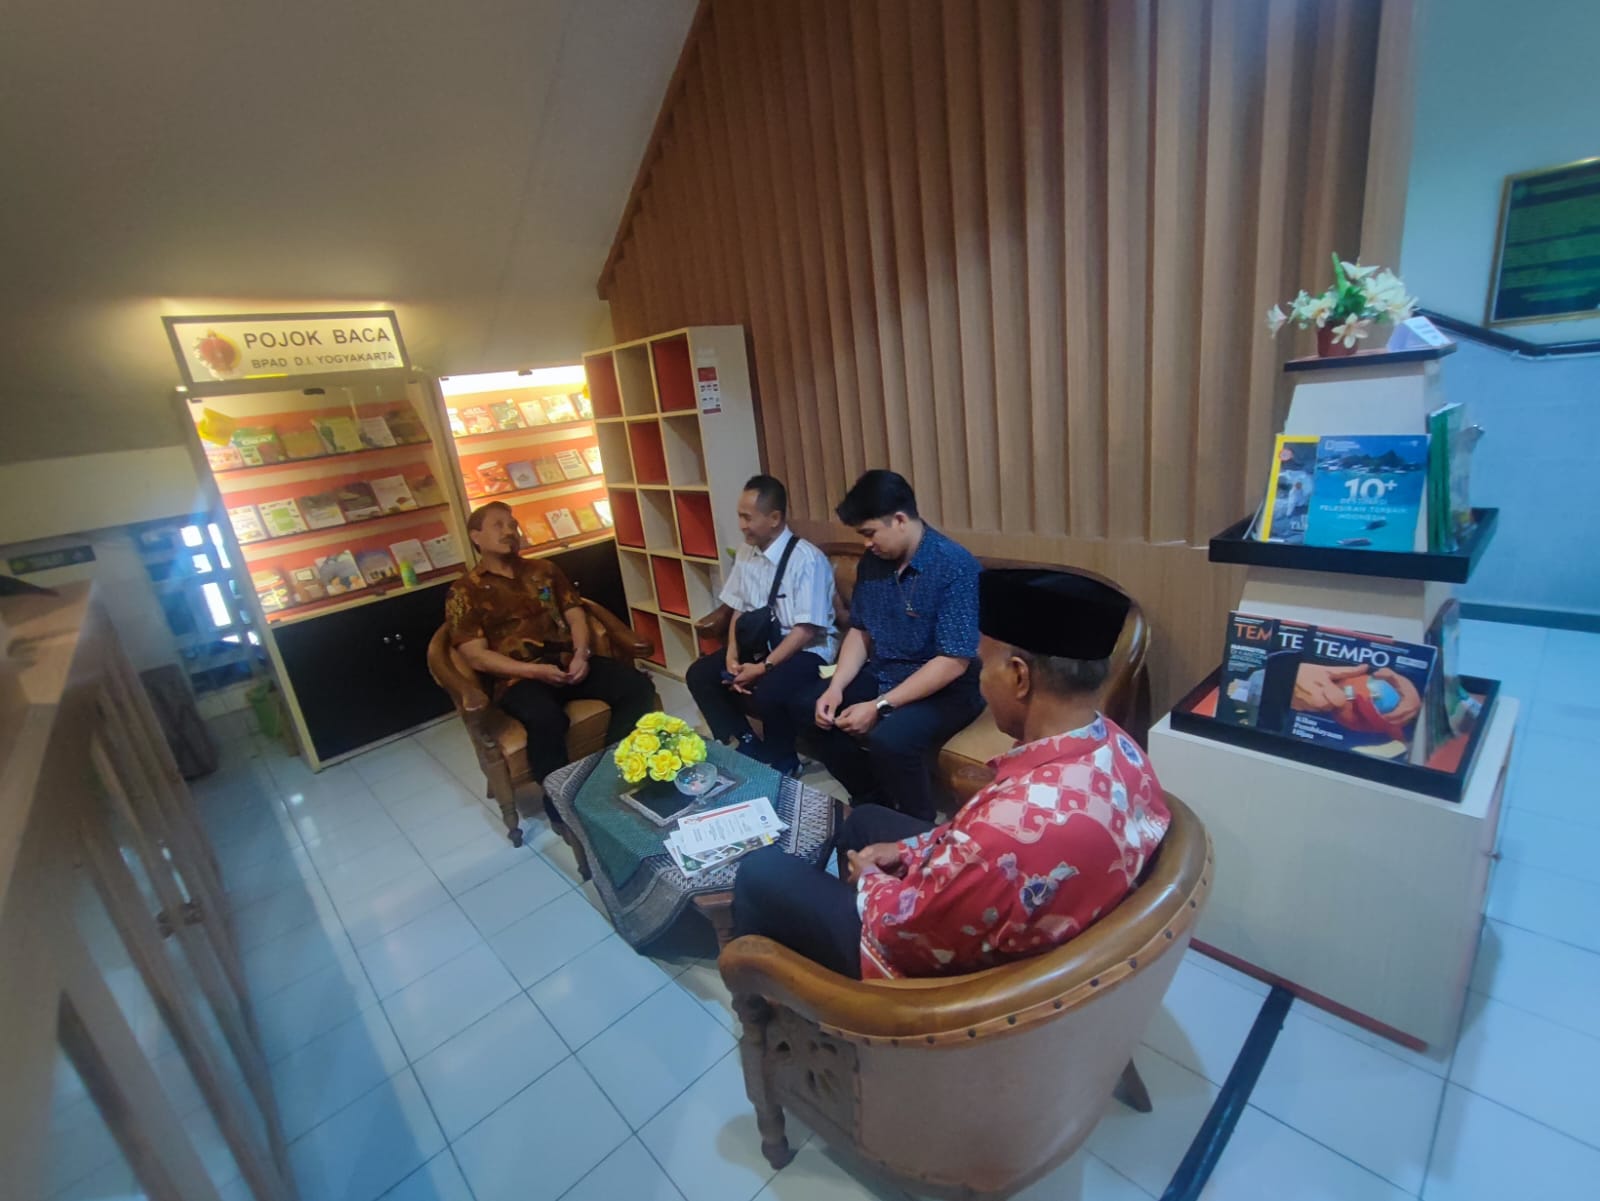 Kunjungan Kerja Badan Urusan Administrasi Mahkamah Agung RI ke Pengadilan Negeri Yogyakarta